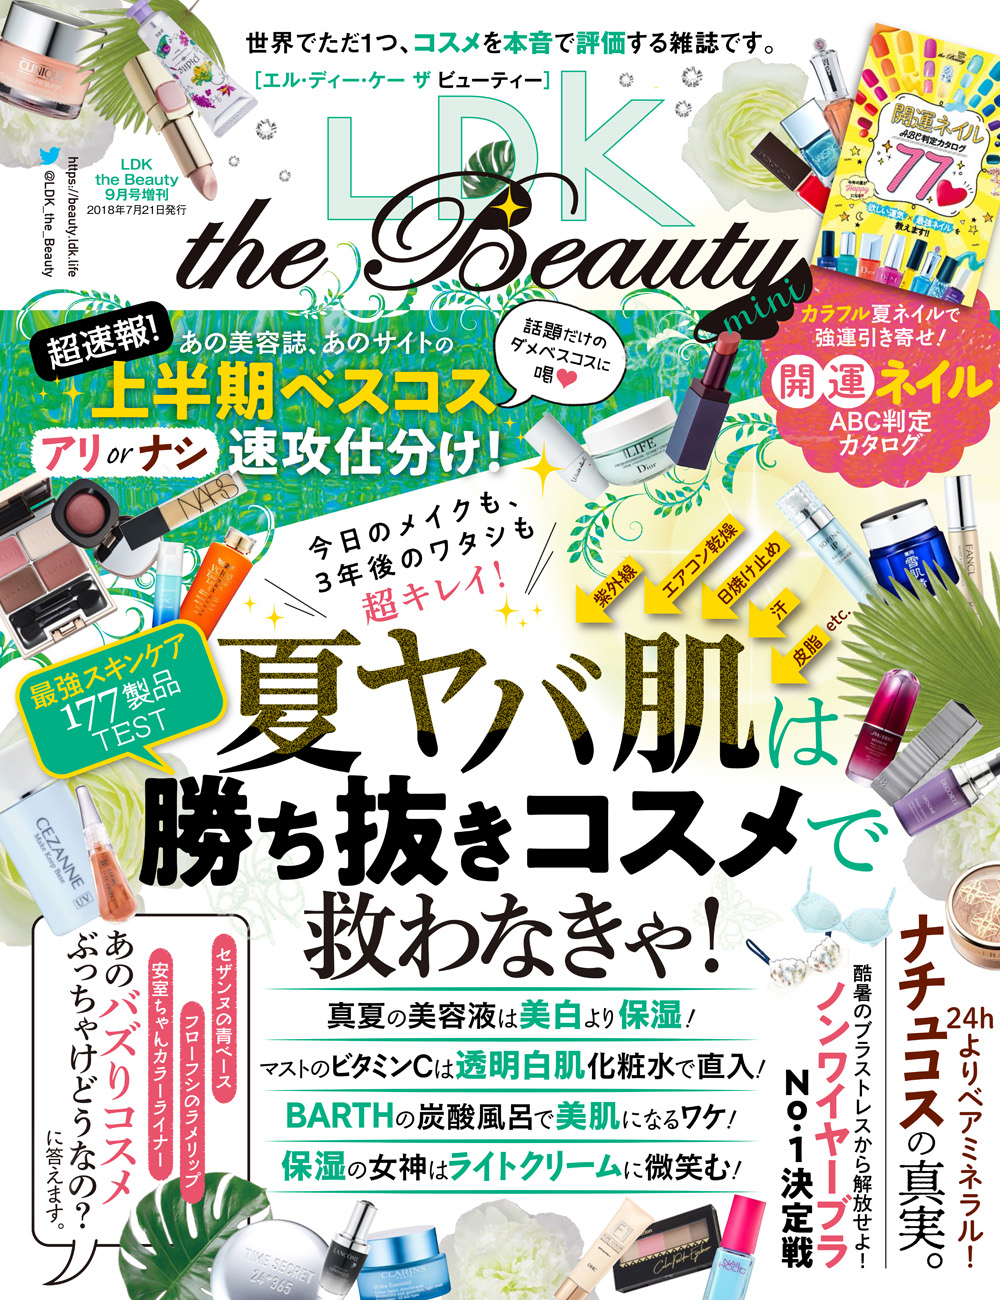 Ldk The Beauty エル ディー ケー ザ ビューティー 18年9月号 Mini 晋遊舎online